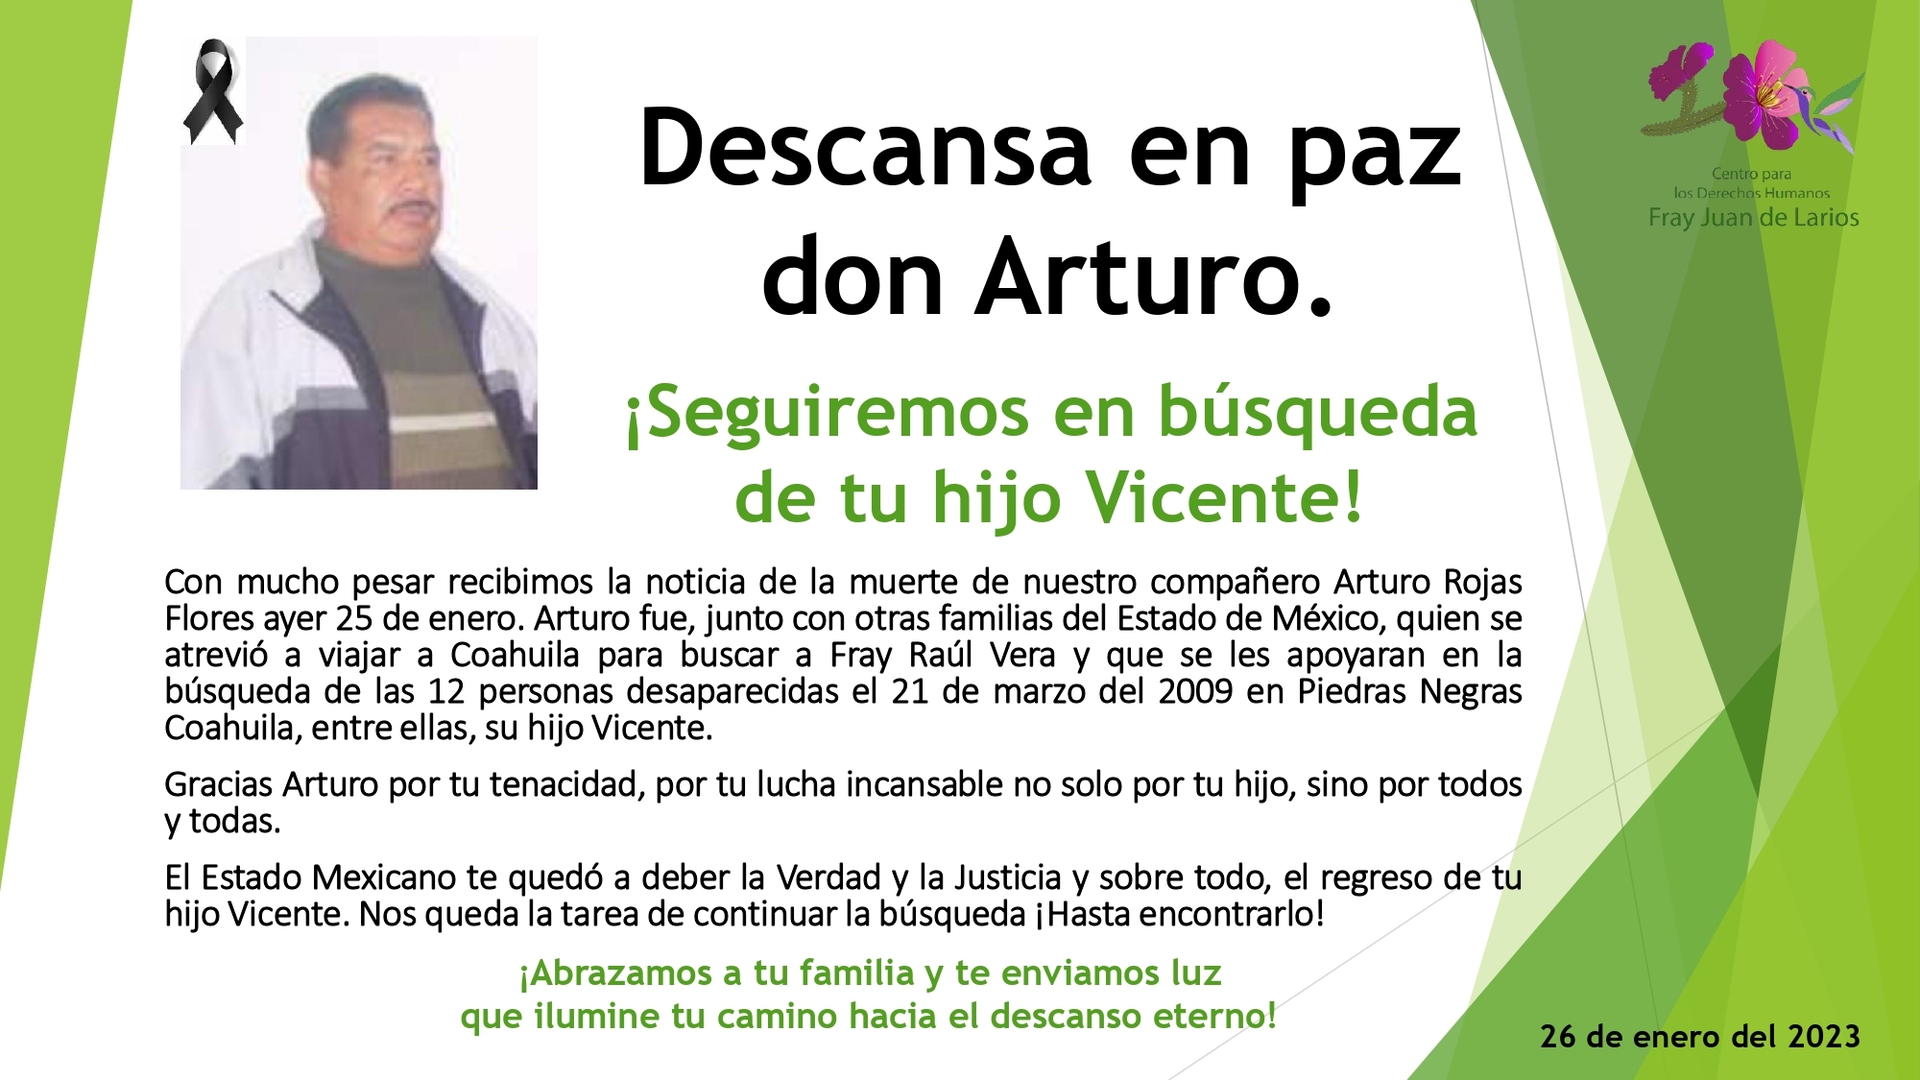 De acuerdo a la asociación Arturo Rojas falleció el 25 de enero, luego de 14 años de buscar a su hijo sin dar con él. (ESPECIAL)